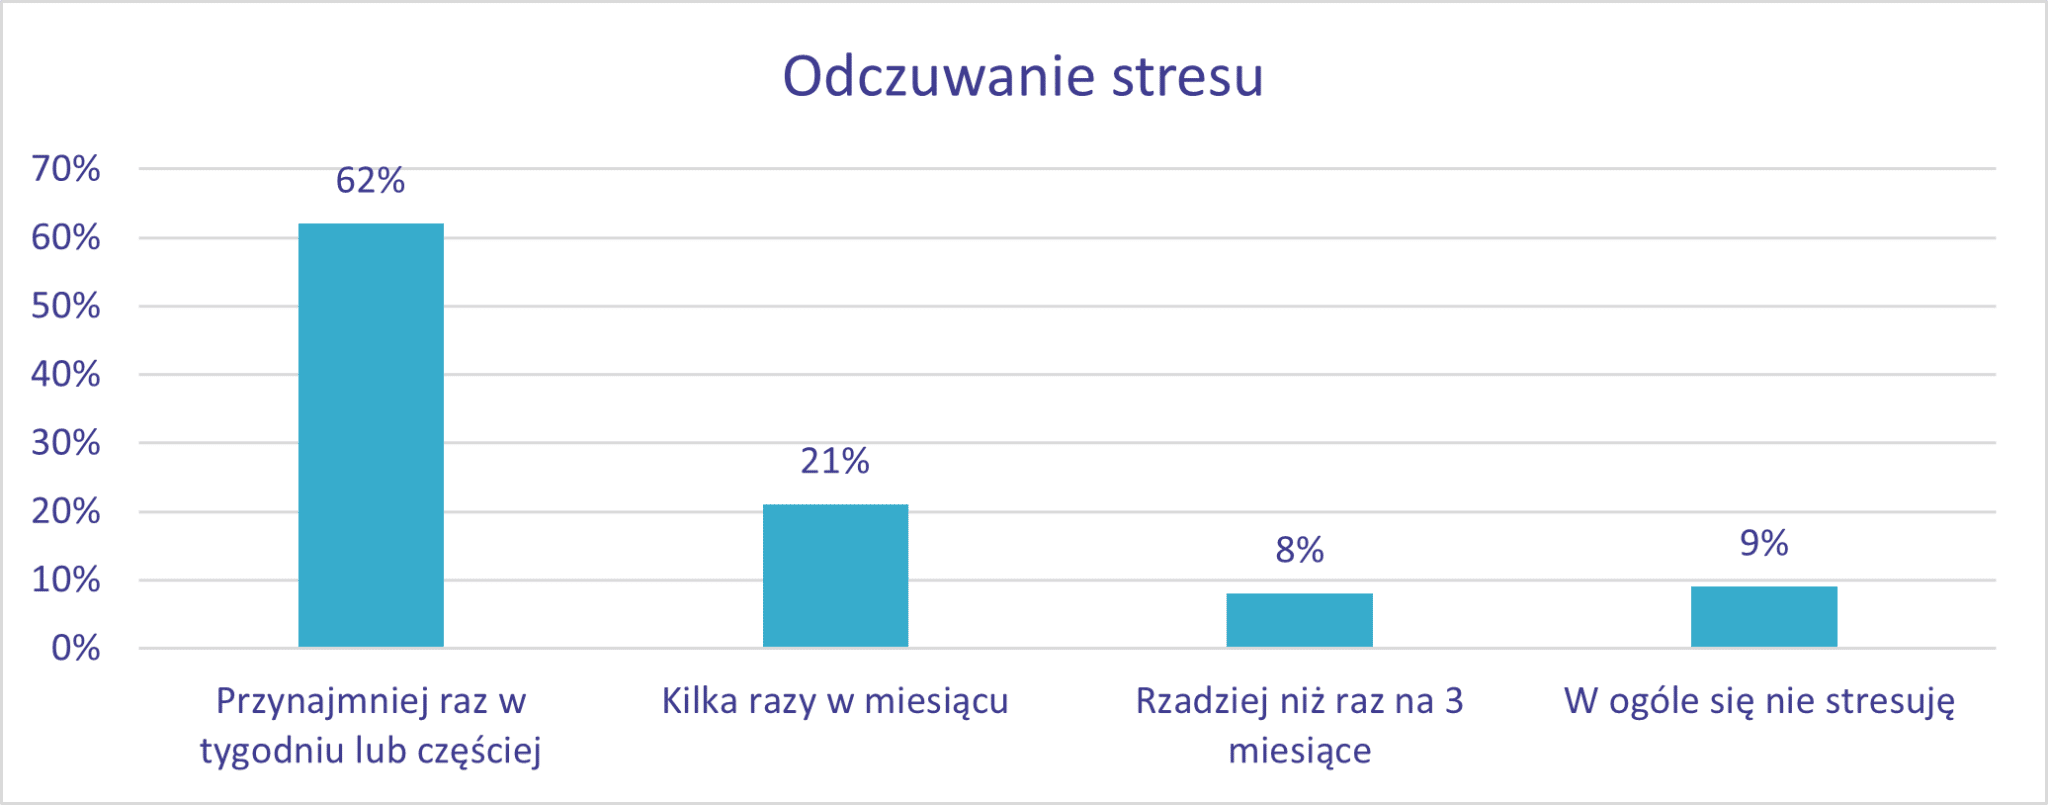 Ponad Połowa Polaków Stresuje Się Przynajmniej Raz W Tygodniu 3178